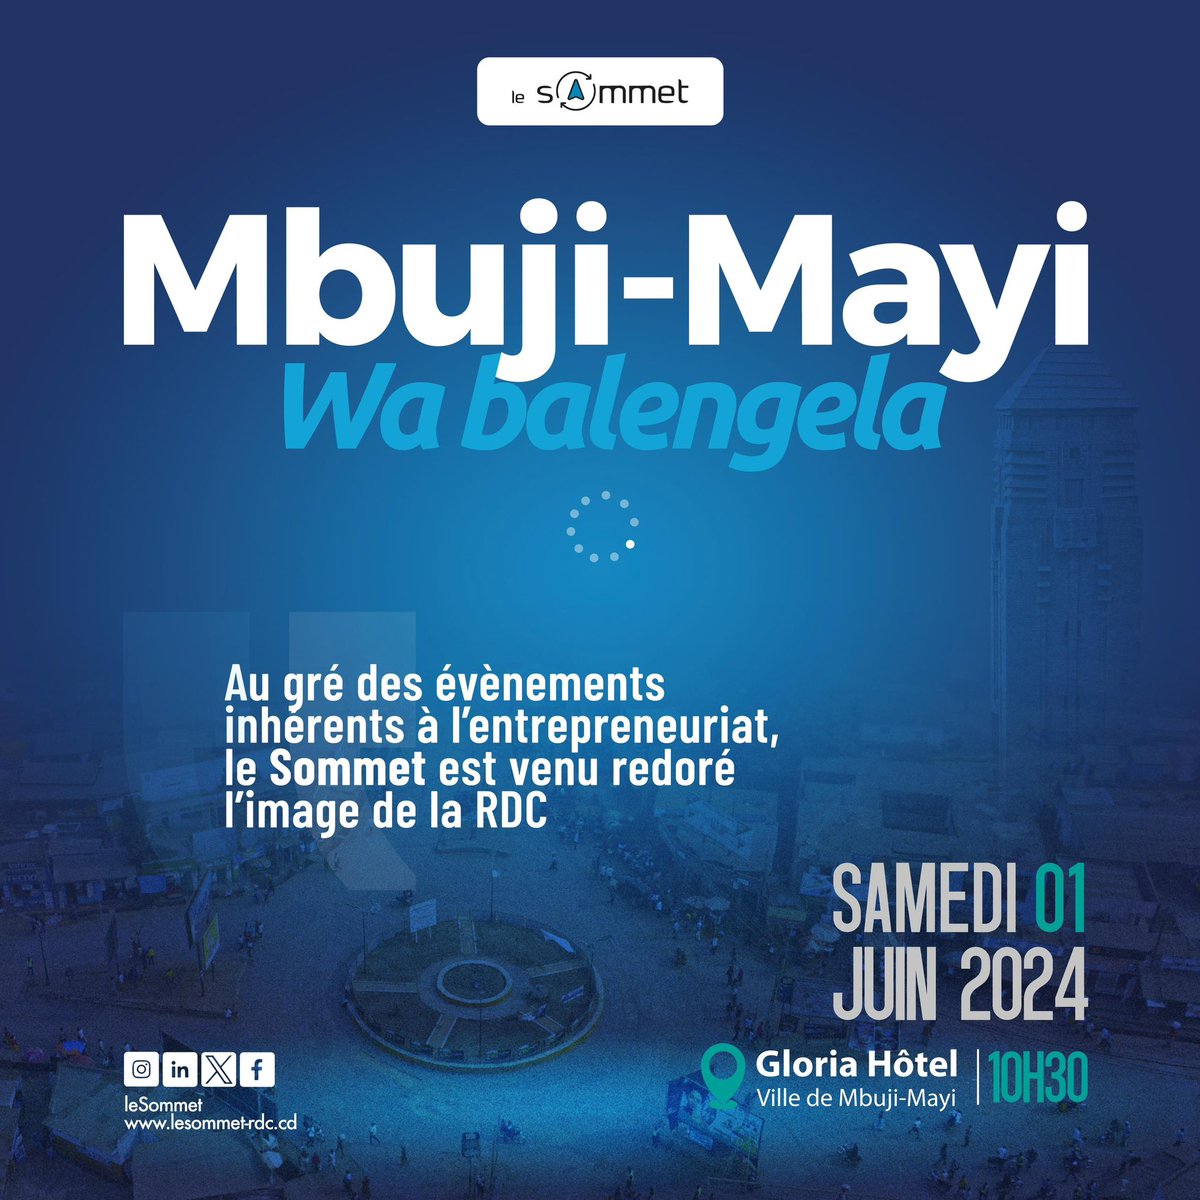 Le Grand rendez-vous des entrepreneurs à Mbuji-Mayi 💯

À très bientôt 
@leSOmmet243 
#Entrepreneuriat
#RDC